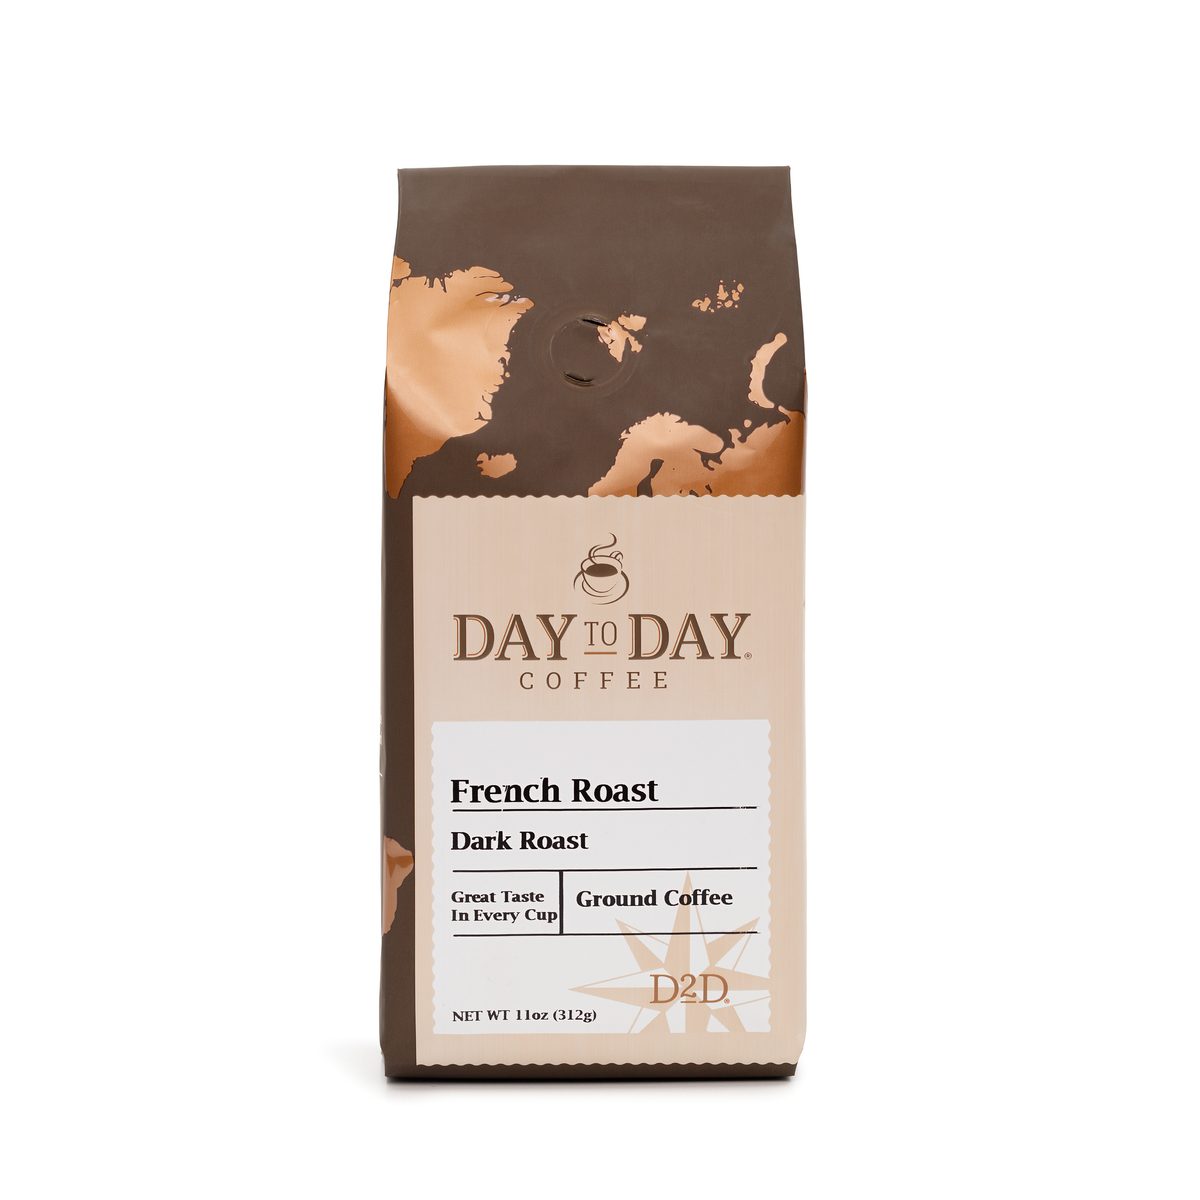 Day to day coffee 11oz french roast dark roast ground coffee - 1